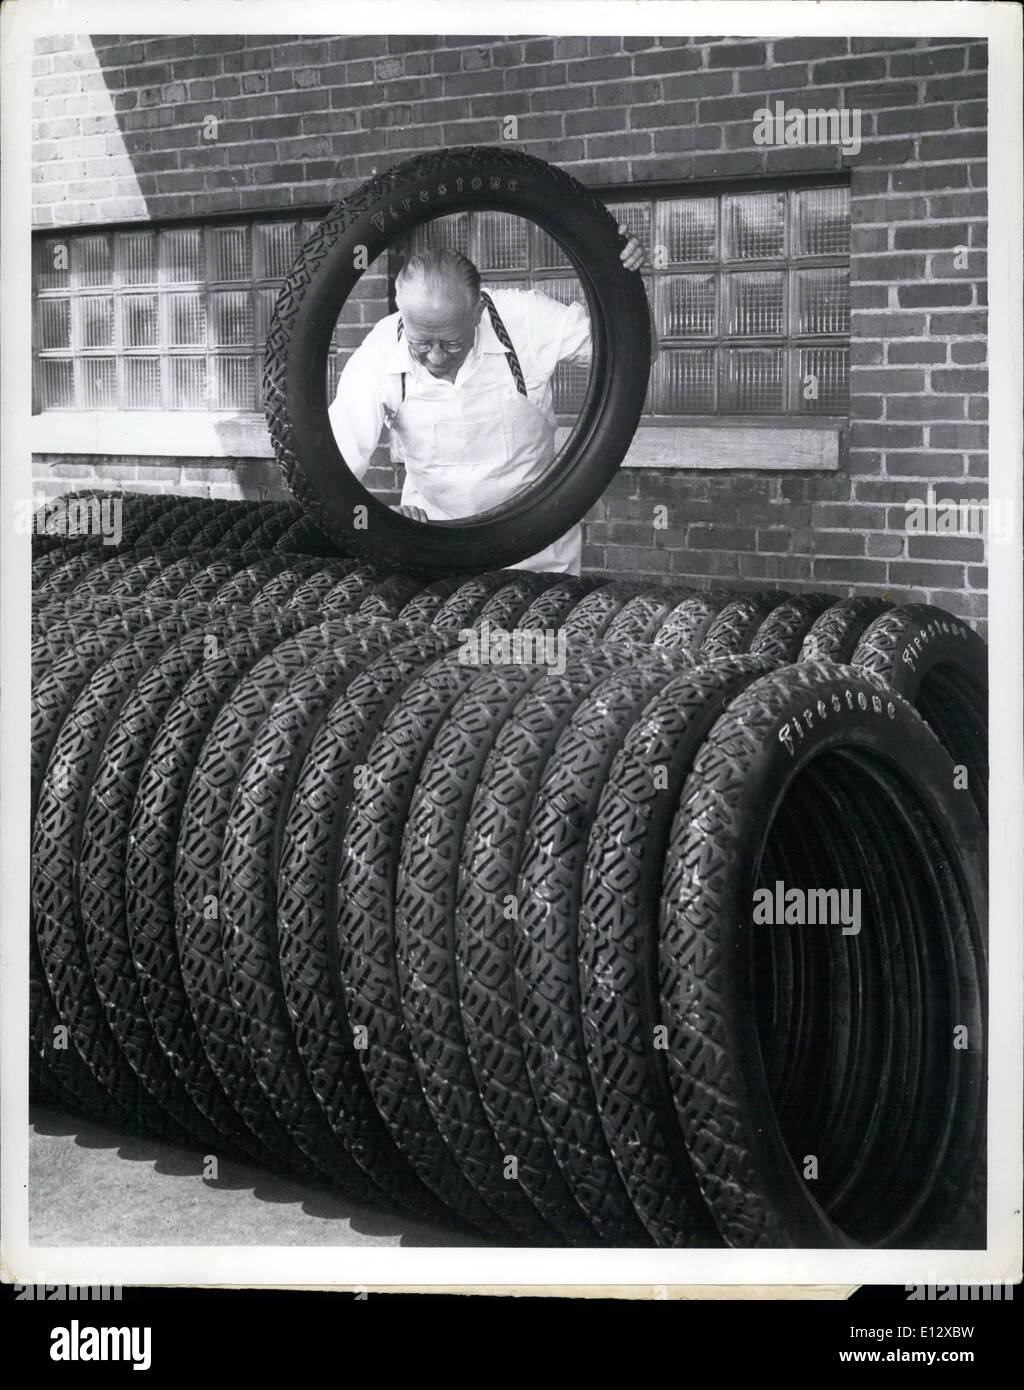 El 26 de febrero de 2012 - El primer envío de viejas llantas está en camino de Akron, Ohio, a Washington para satisfacer las necesidades de los 200 automóviles antiguos dueños quienes desfilarán por la Avenida Constitución el 23 de septiembre en la celebración del 50º aniversario de la Asociación Americana de Automóviles. Estos neumáticos son fabricados laboriosamente a mano por veteranos empleados de la Firestone Tire & Rubber Company para duplicar las usadas en el 1900. Hace cuarenta años, William H. Lincks envuelto el mismo tipo de neumáticos se le muestra la inspección anterior como estaban preparados para el envío desde la planta de Firestone en Akron Foto de stock